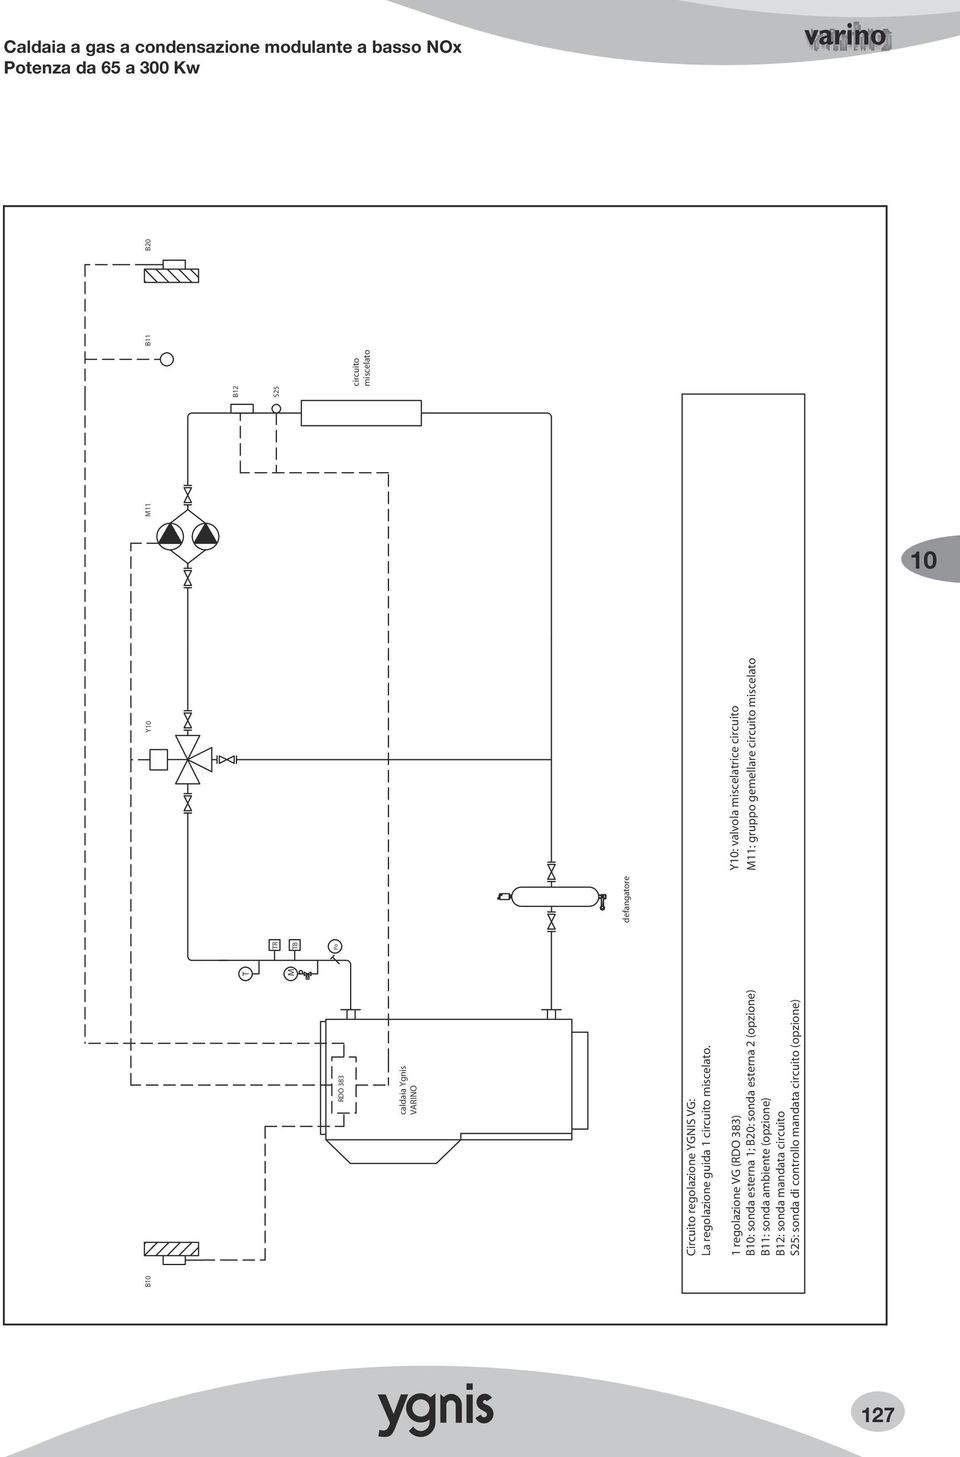 1 regolazione VG (RDO 383) B: sonda esterna 1; B20: sonda esterna 2 (opzione) B11: sonda ambiente (opzione)